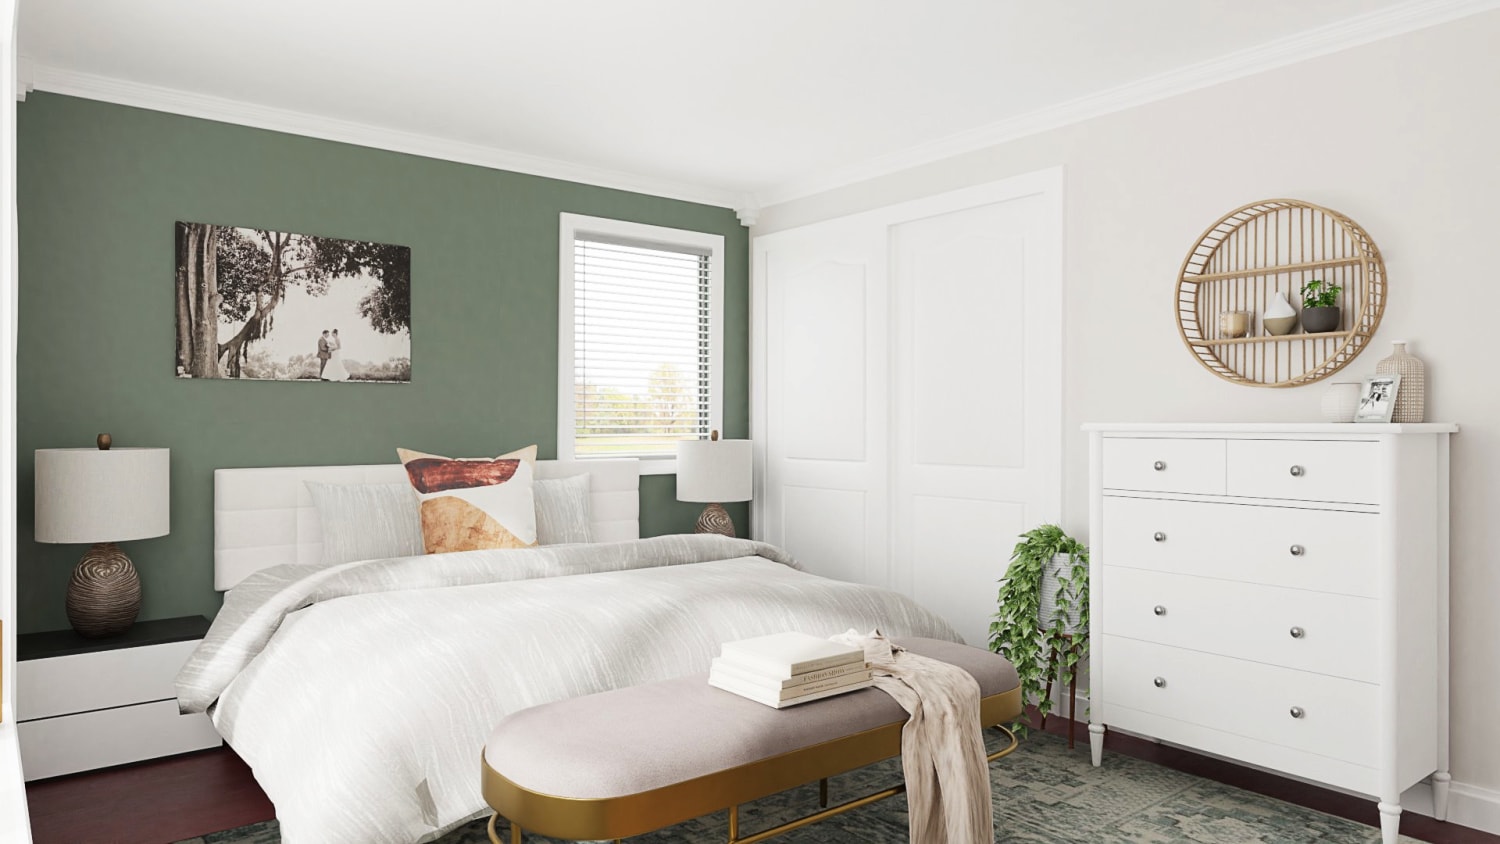 Ngày nay, màu xanh lá cây xô thơm đã trở nên phổ biến không kém trong sơn nhà. Trong phòng ngủ, màu sắc này gợi lên hình ảnh của những khu vườn, cỏ và tất cả những món quà của thiên nhiên — một sự tương phản đáng yên tâm với cuộc sống có nhịp độ nhanh, chạy theo công nghệ của chúng ta. Kết hợp màu này với bộ đồ giường  hoặc đồ trang trí màu trắng và gỗ tông màu mật ong ấm áp để có một kết quả đặc biệt dễ chịu khiến bạn muốn bò vào giường — và ở yên đó!